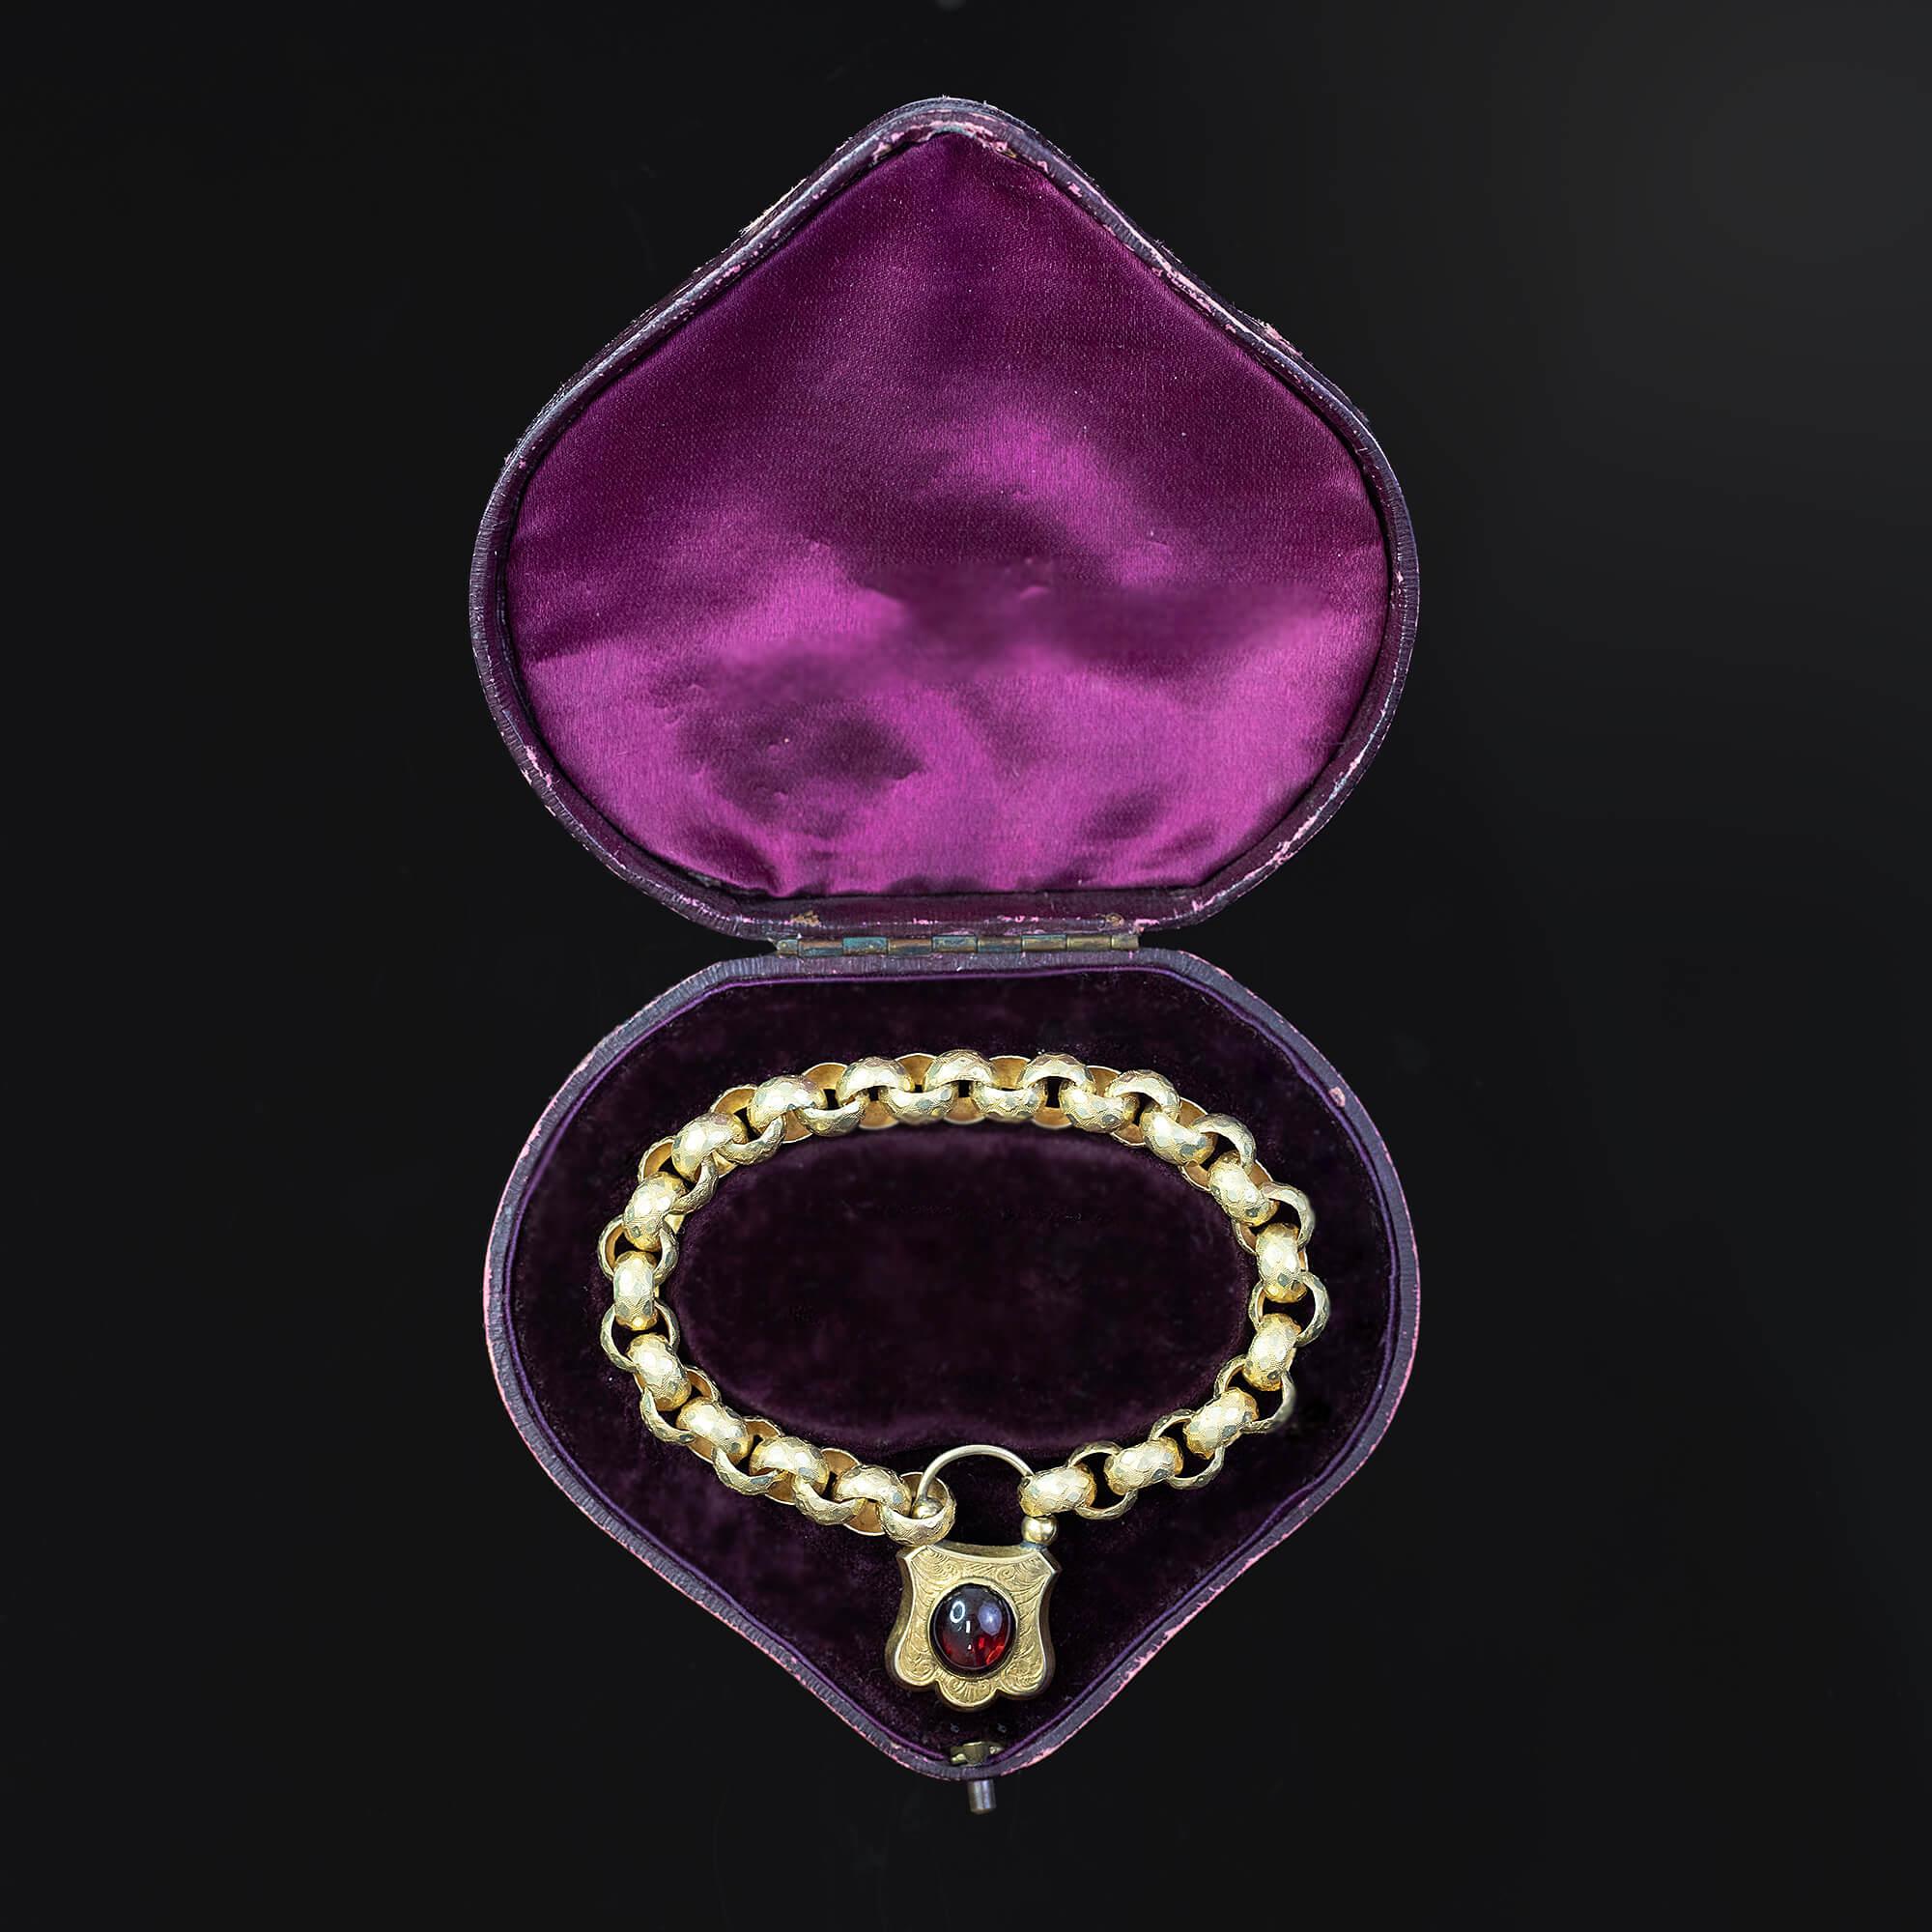 1840s jewelry